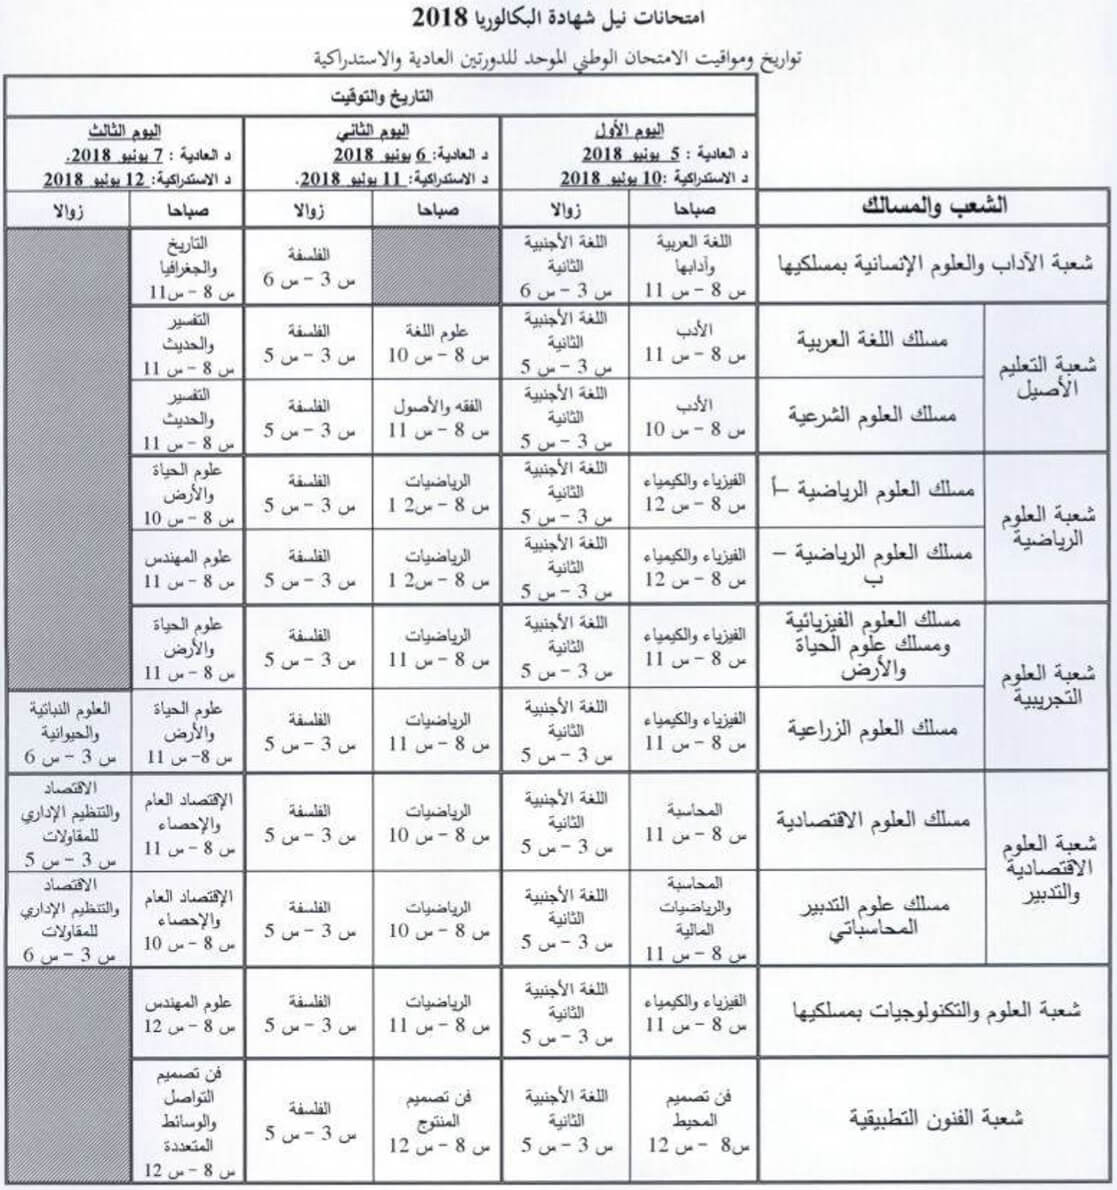 الامتحان الوطني 2018 في اللغة العربية